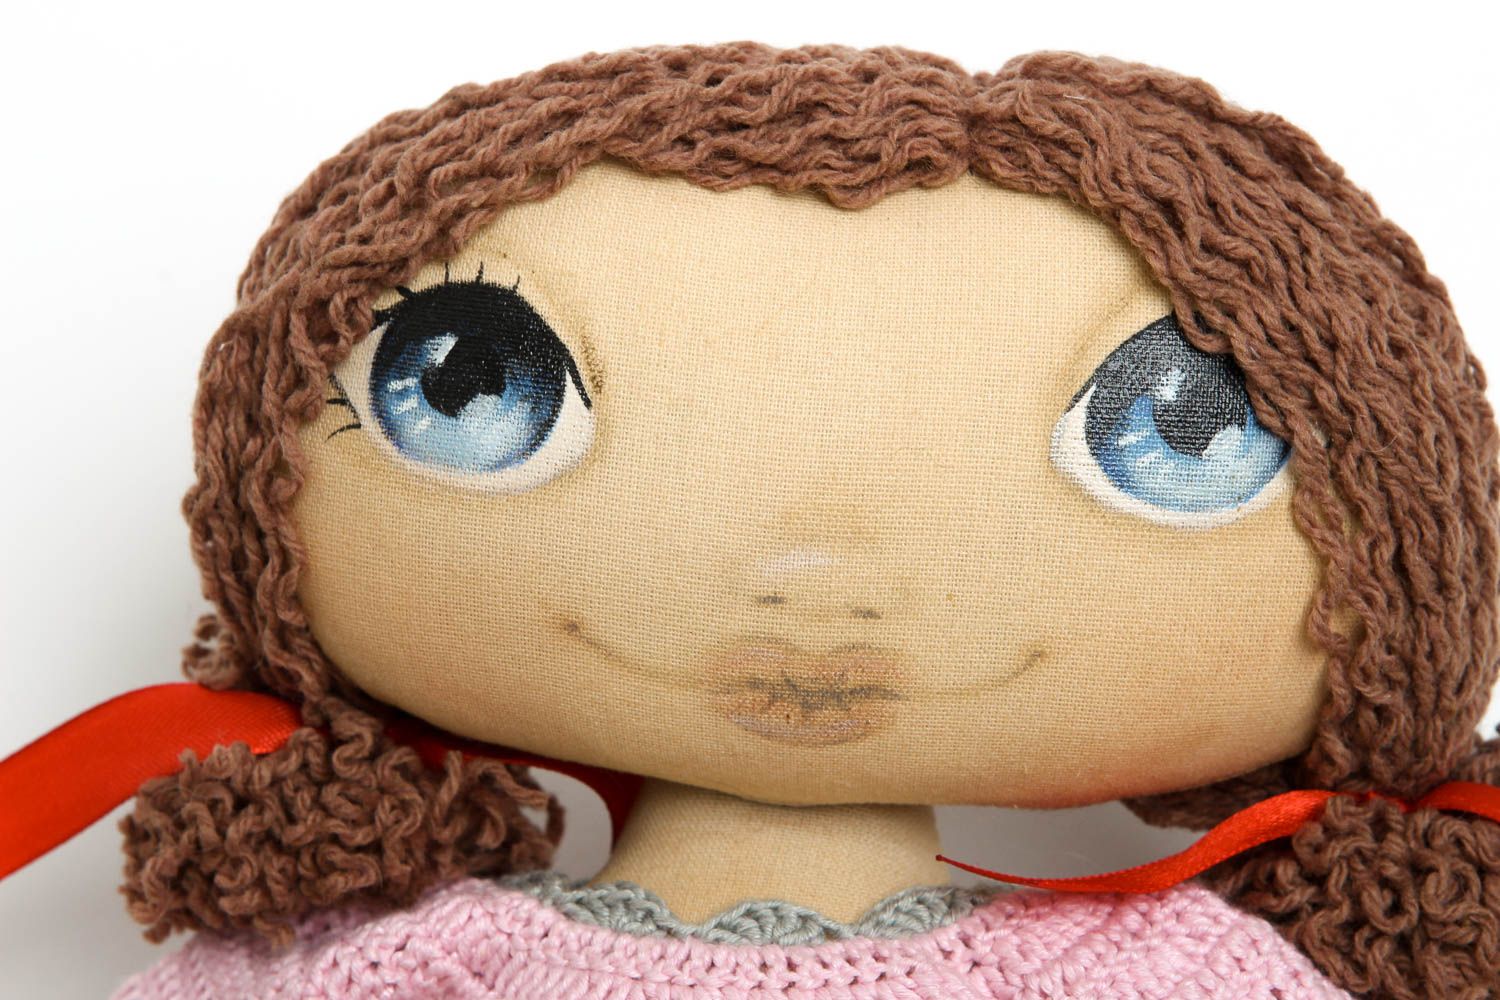 Handmade soft toy girl doll designer toys homemade home decor gifts for girls photo 2